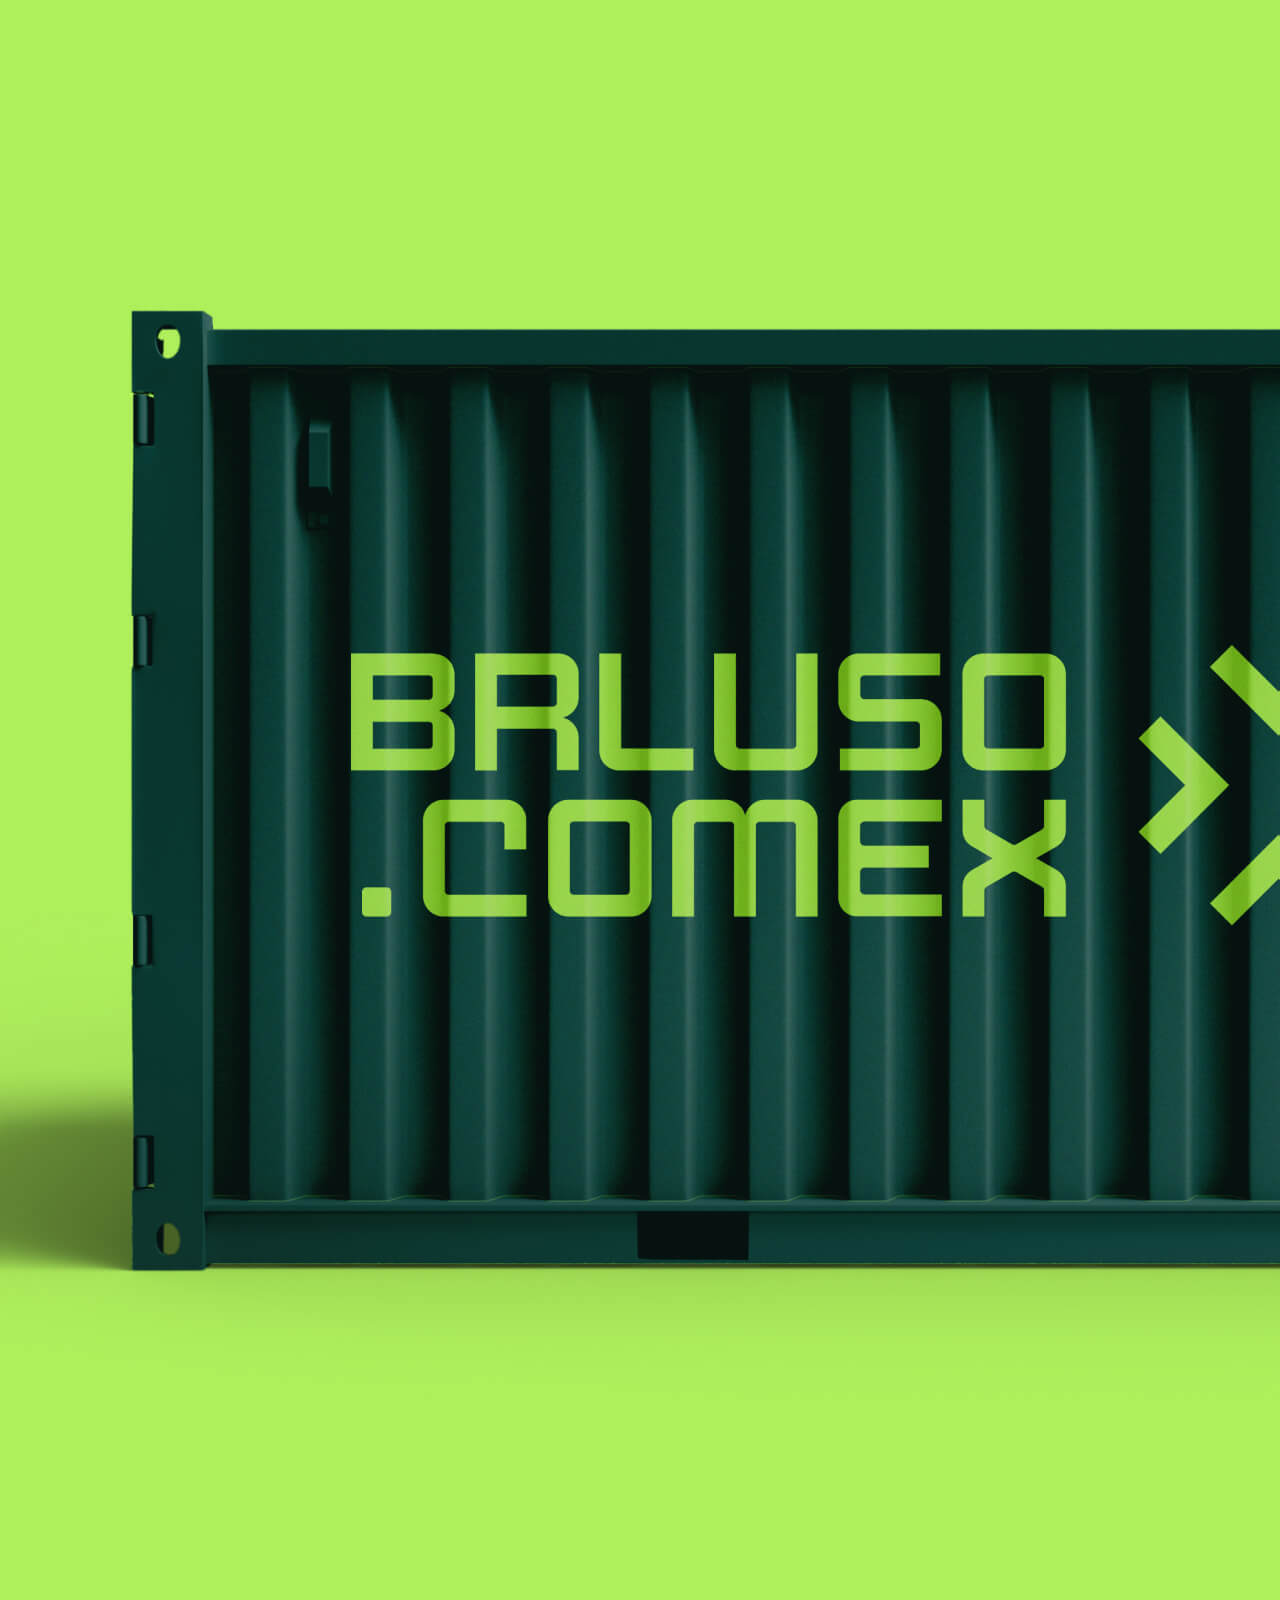 Um container como o logo da BRLuso.Comex impresso.